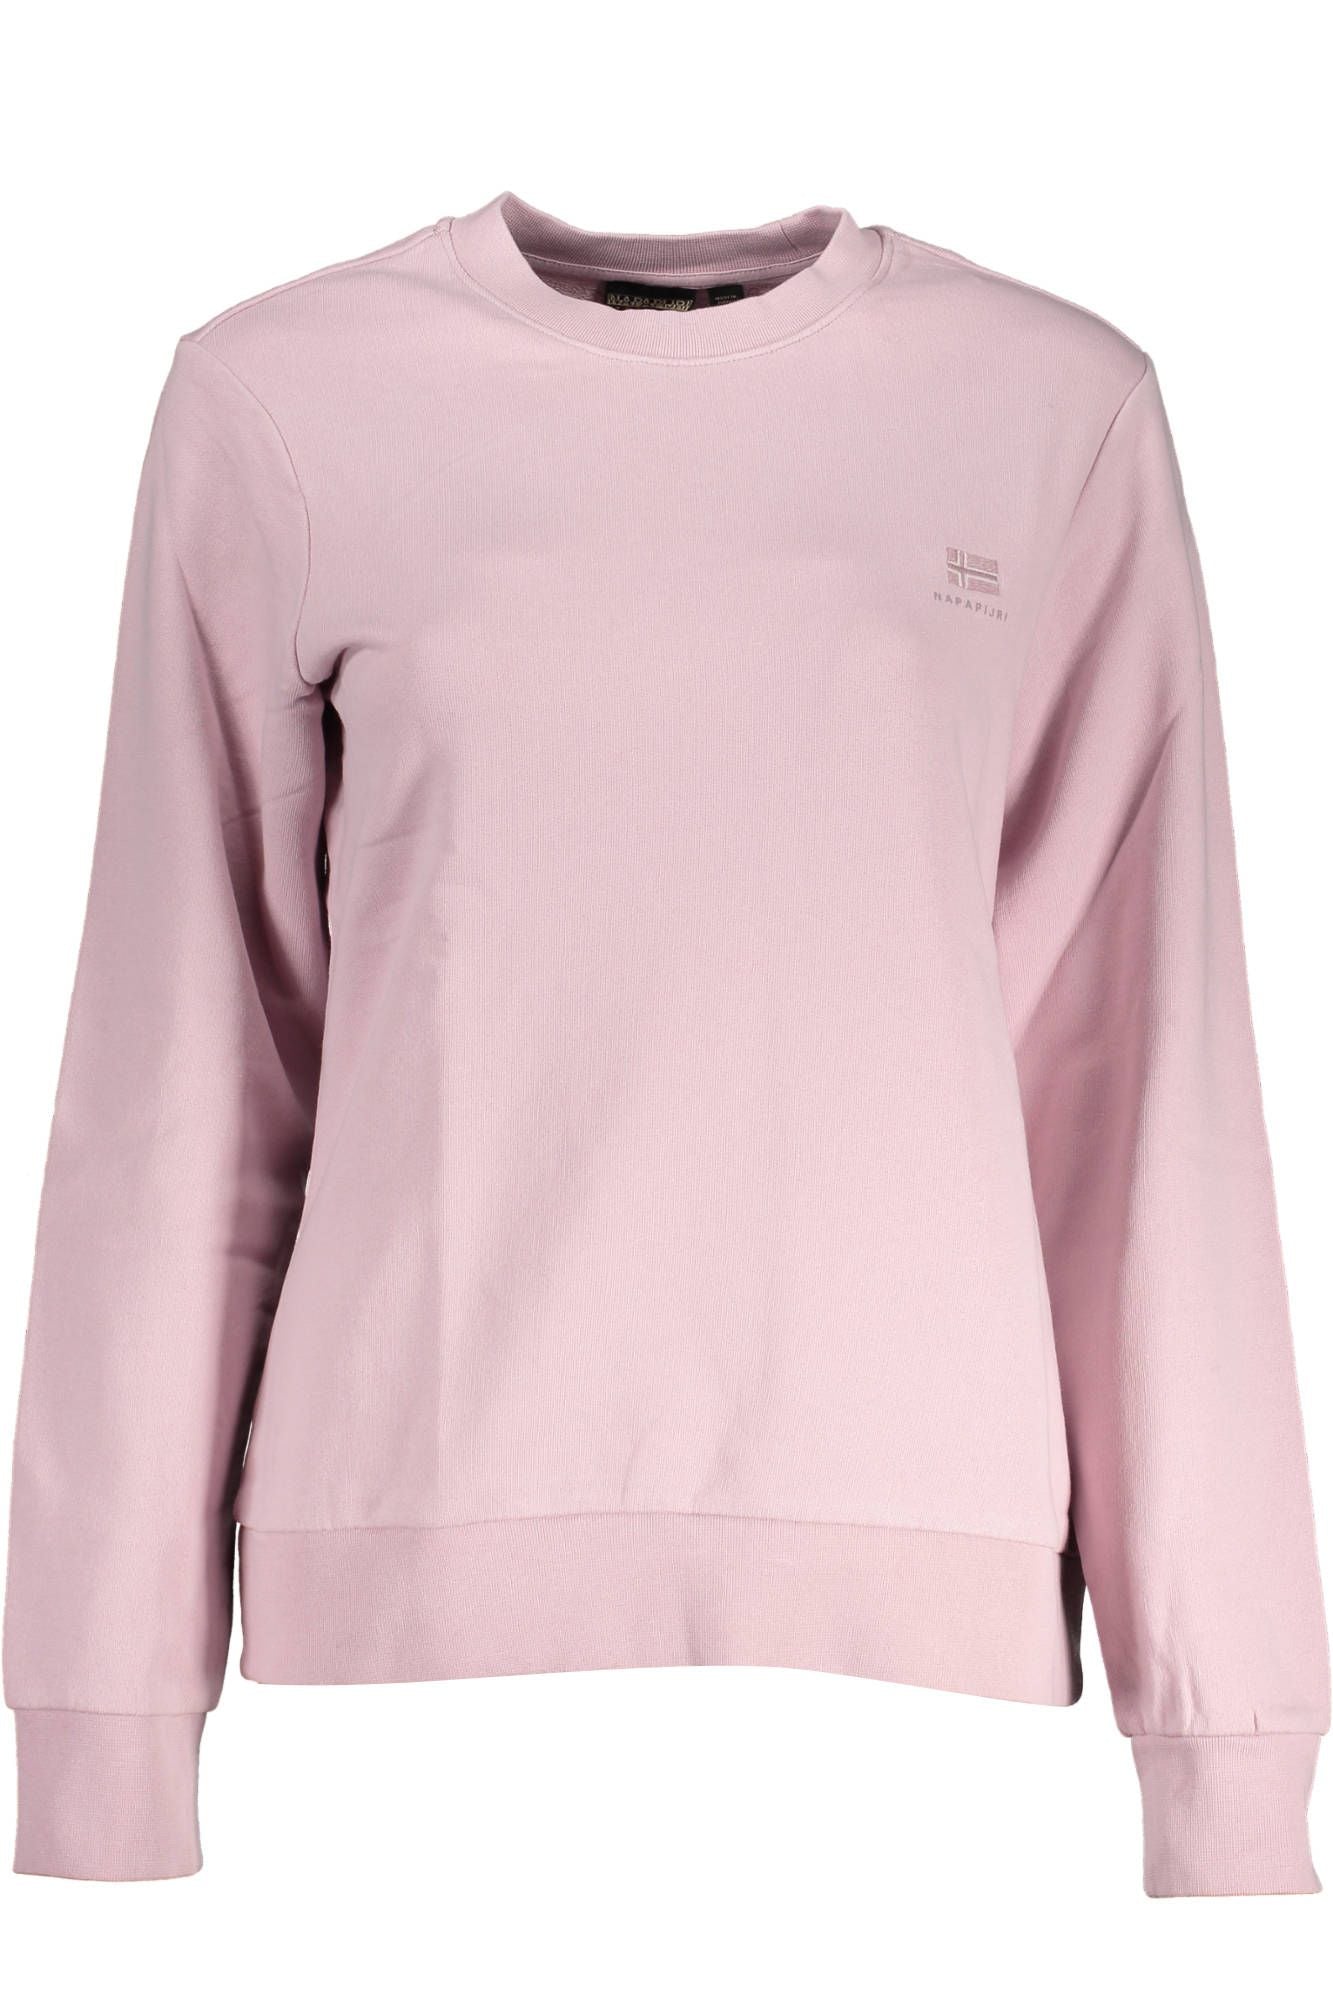 Pink Cotton Crew Neck Embroidered Sweatshirt